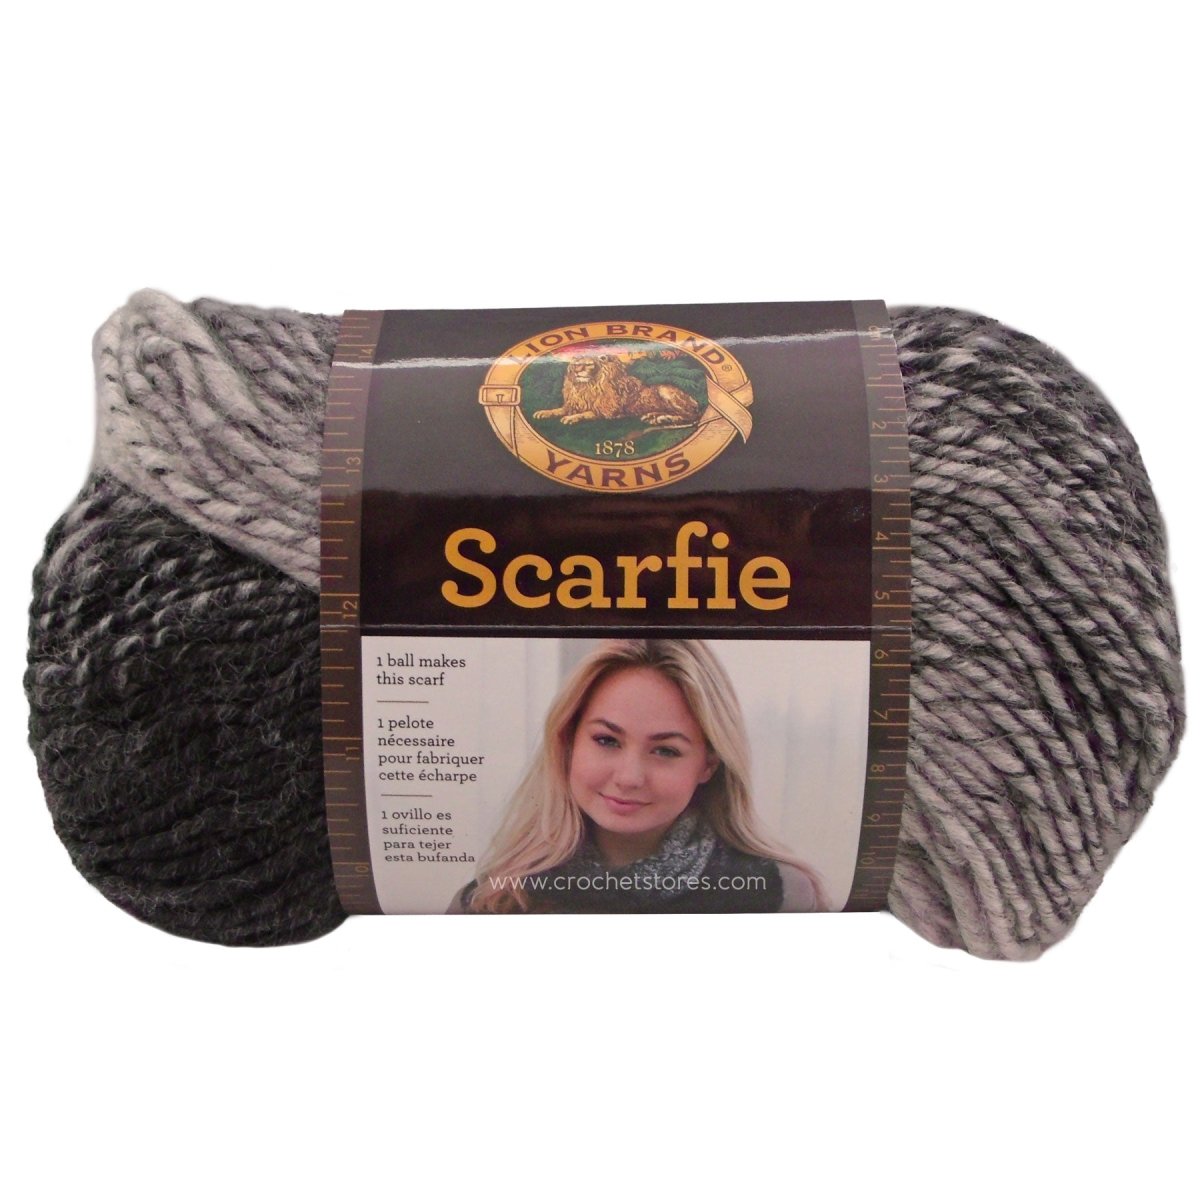 SCARFIE - Crochetstores826-207